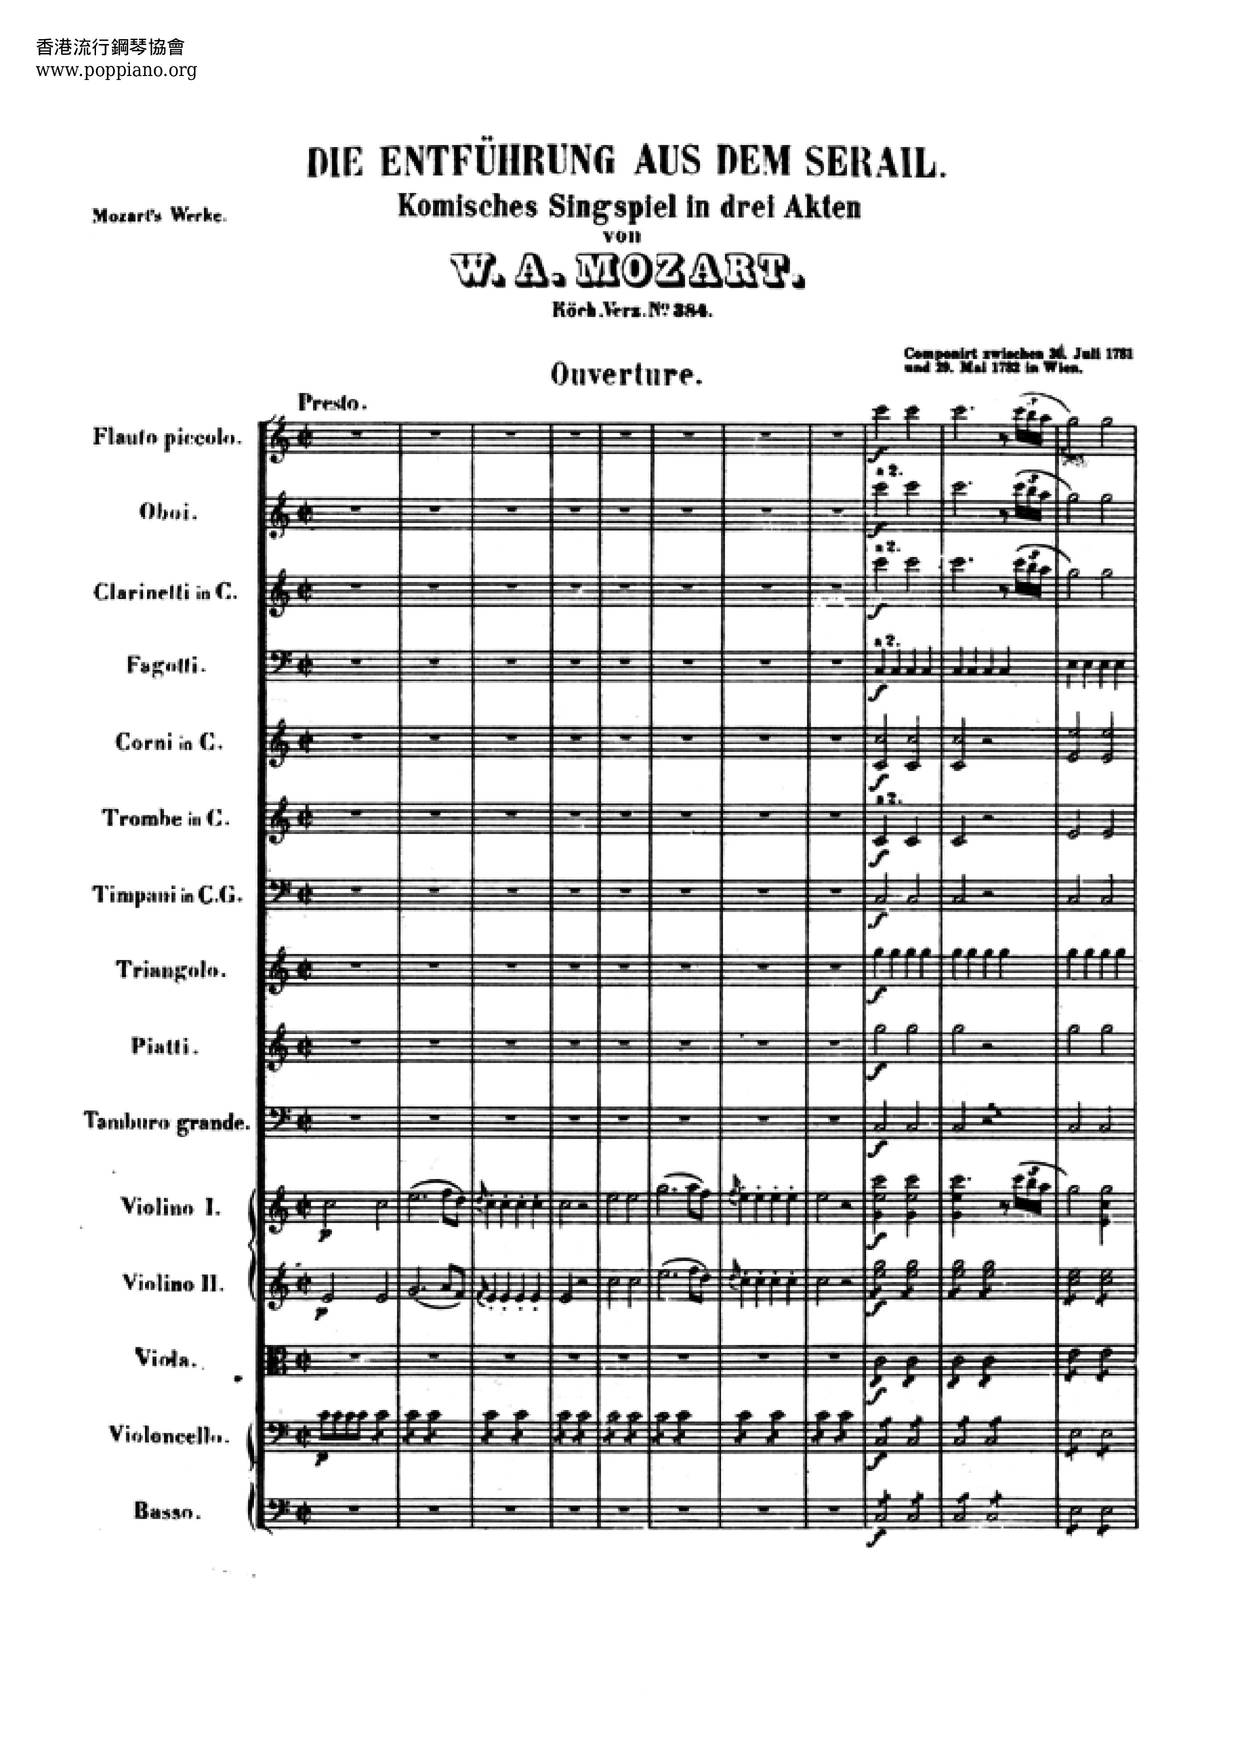 Die Entführung Aus Dem Serail, K. 384 Score